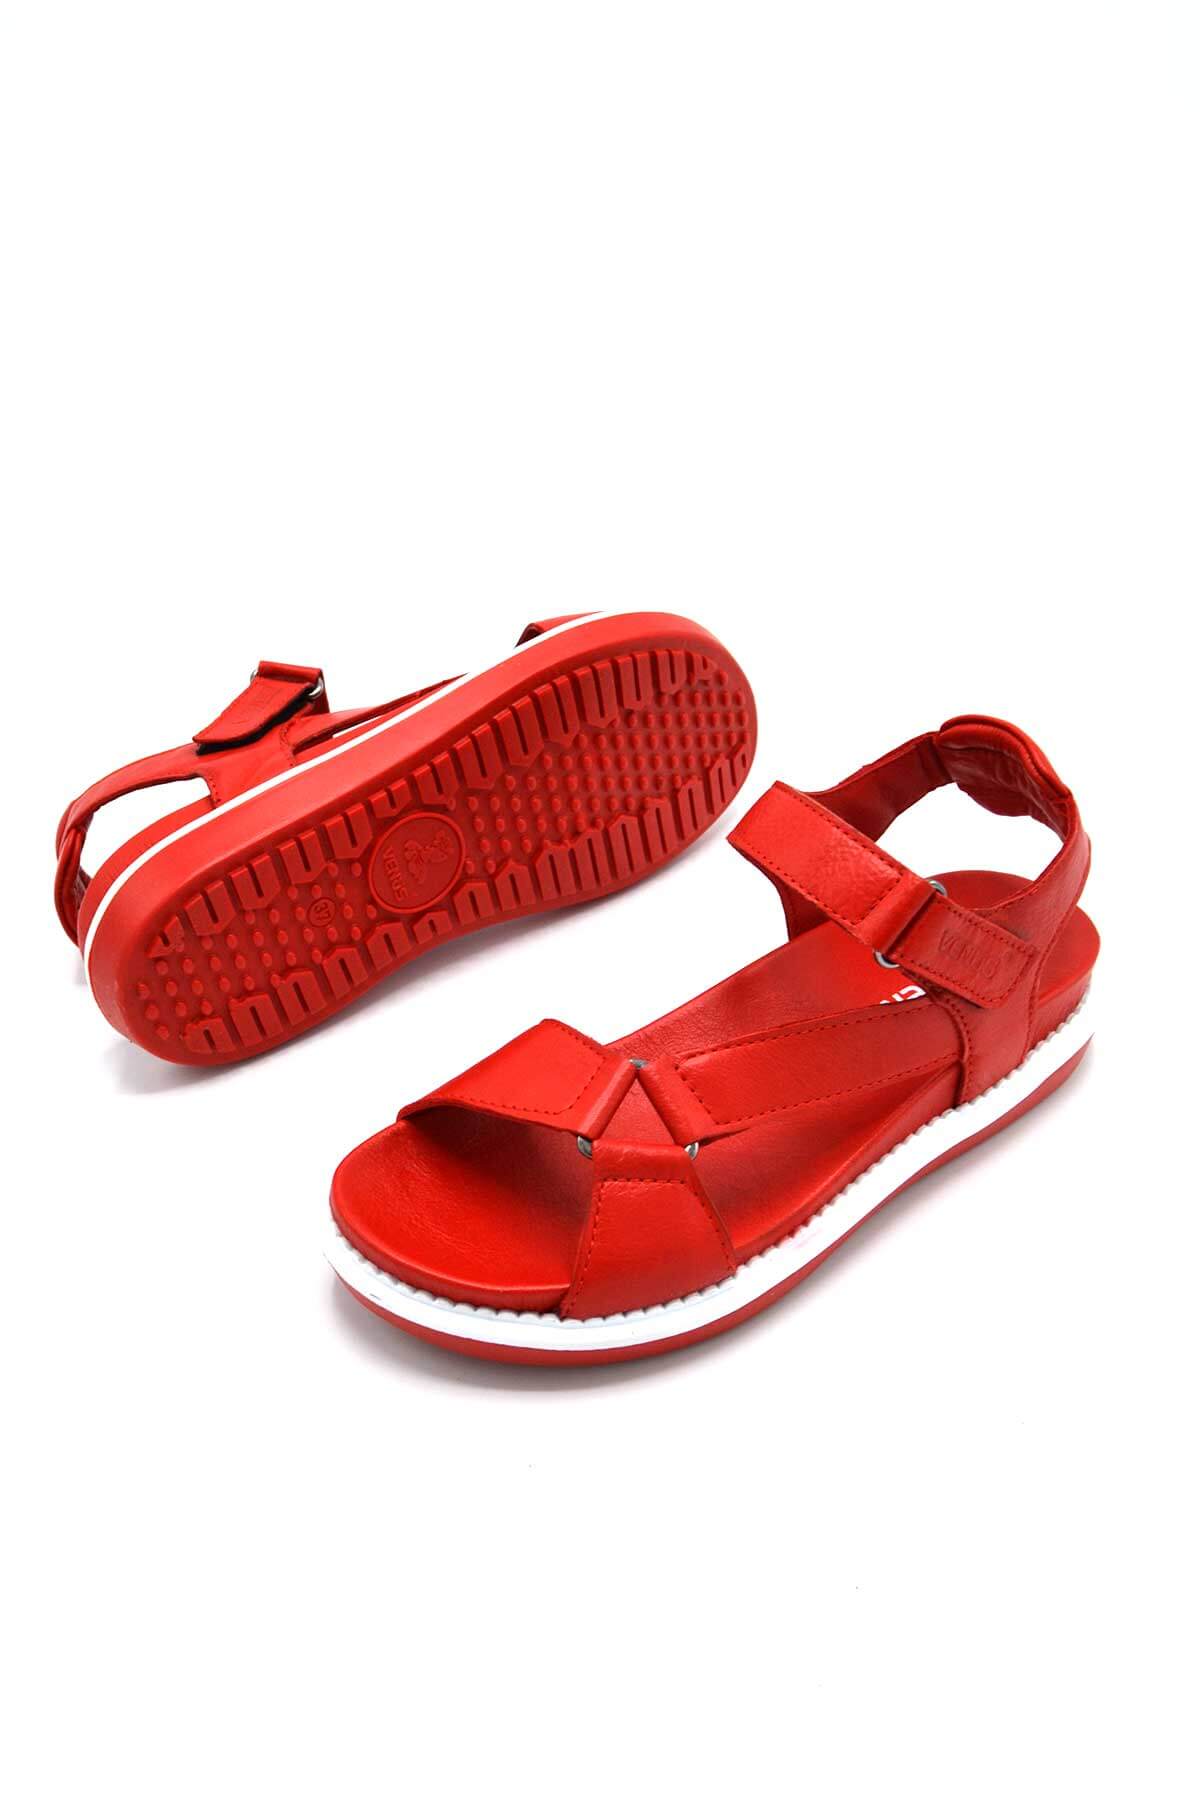 Kadın Comfort Deri Sandalet Kırmızı 202064Y - Thumbnail